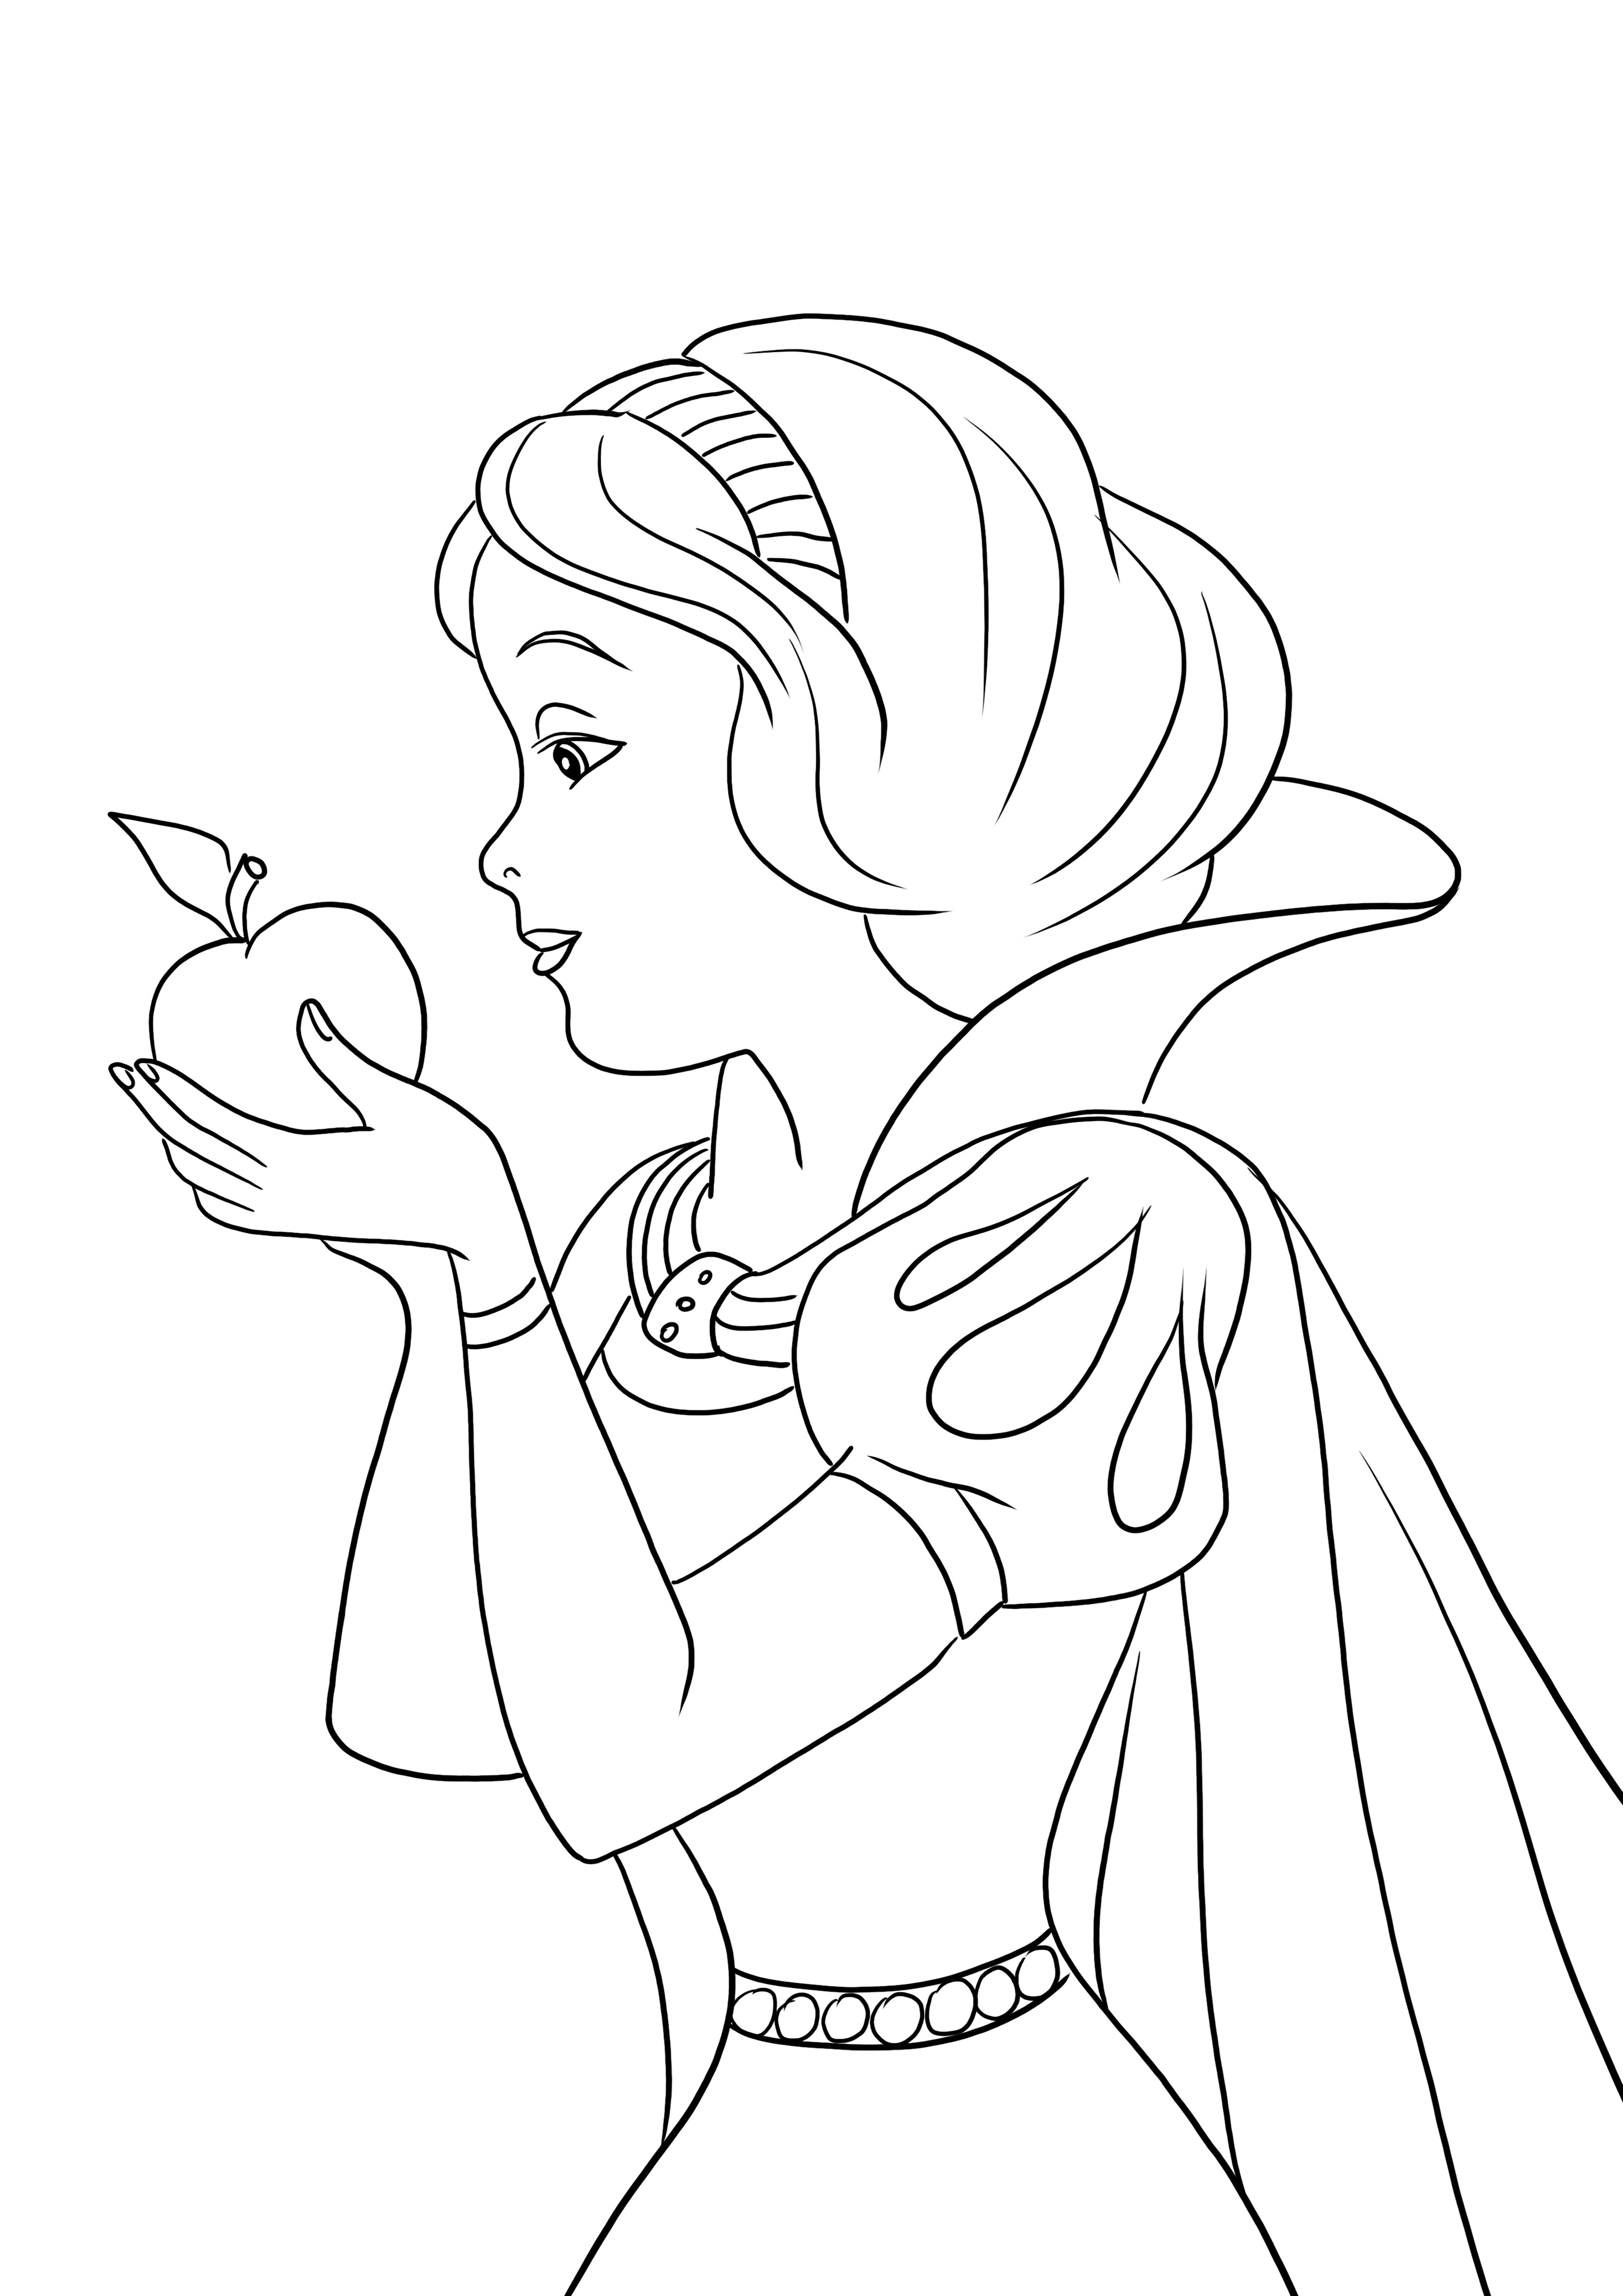 Putri Salju memakan apel siap diwarnai dan dicetak untuk gambar gratis